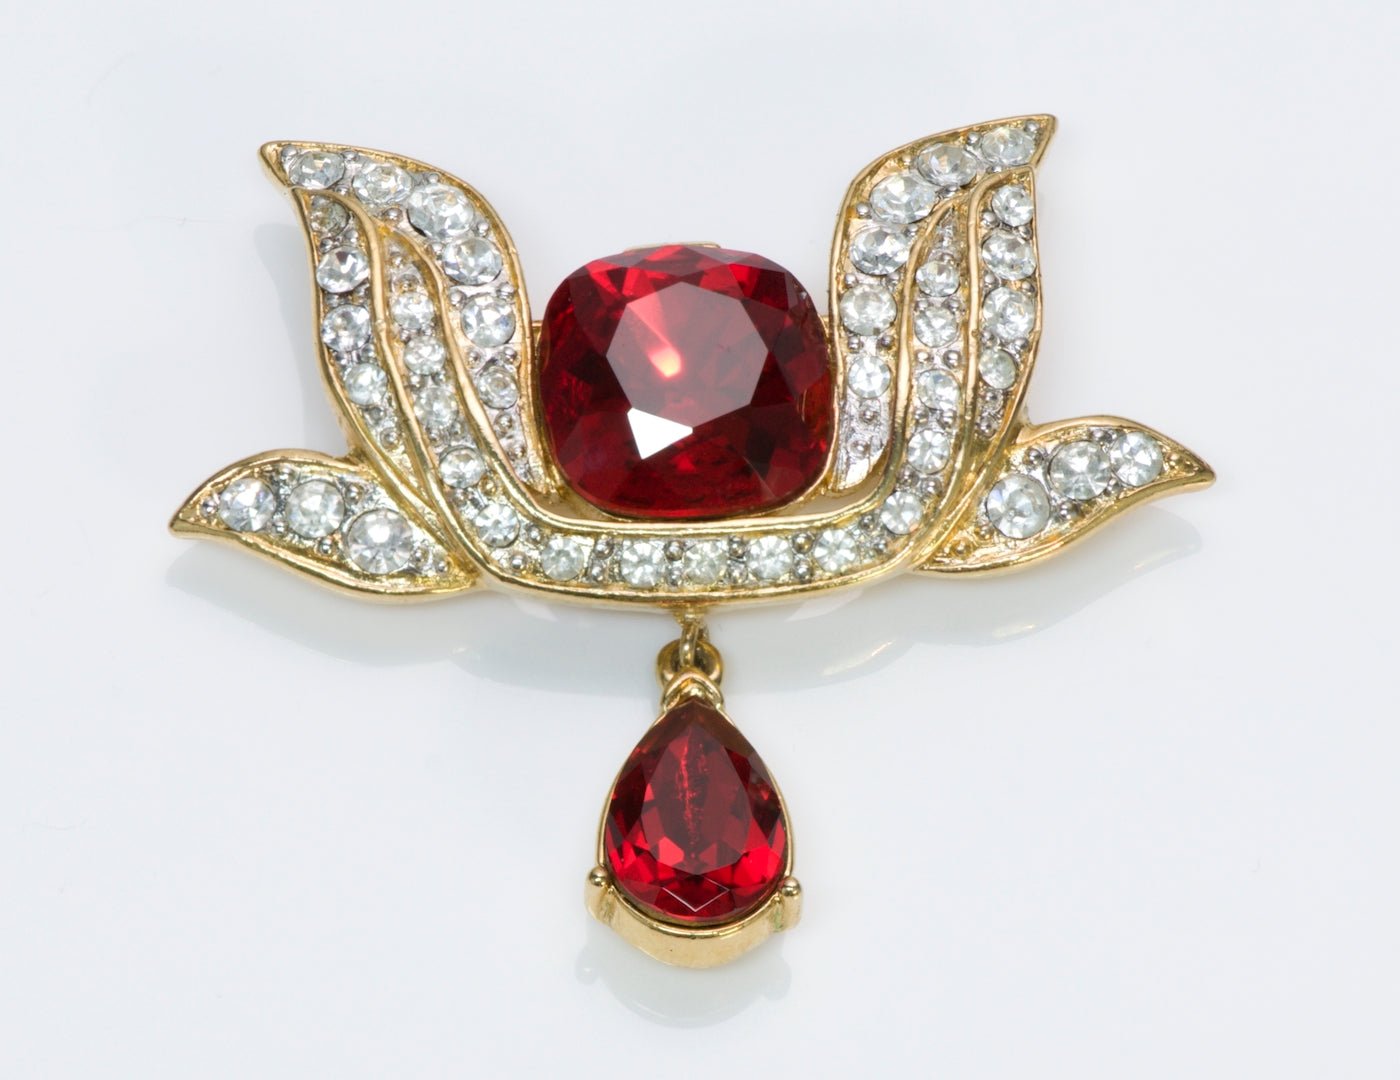 Trifari Red Crystal Brooch